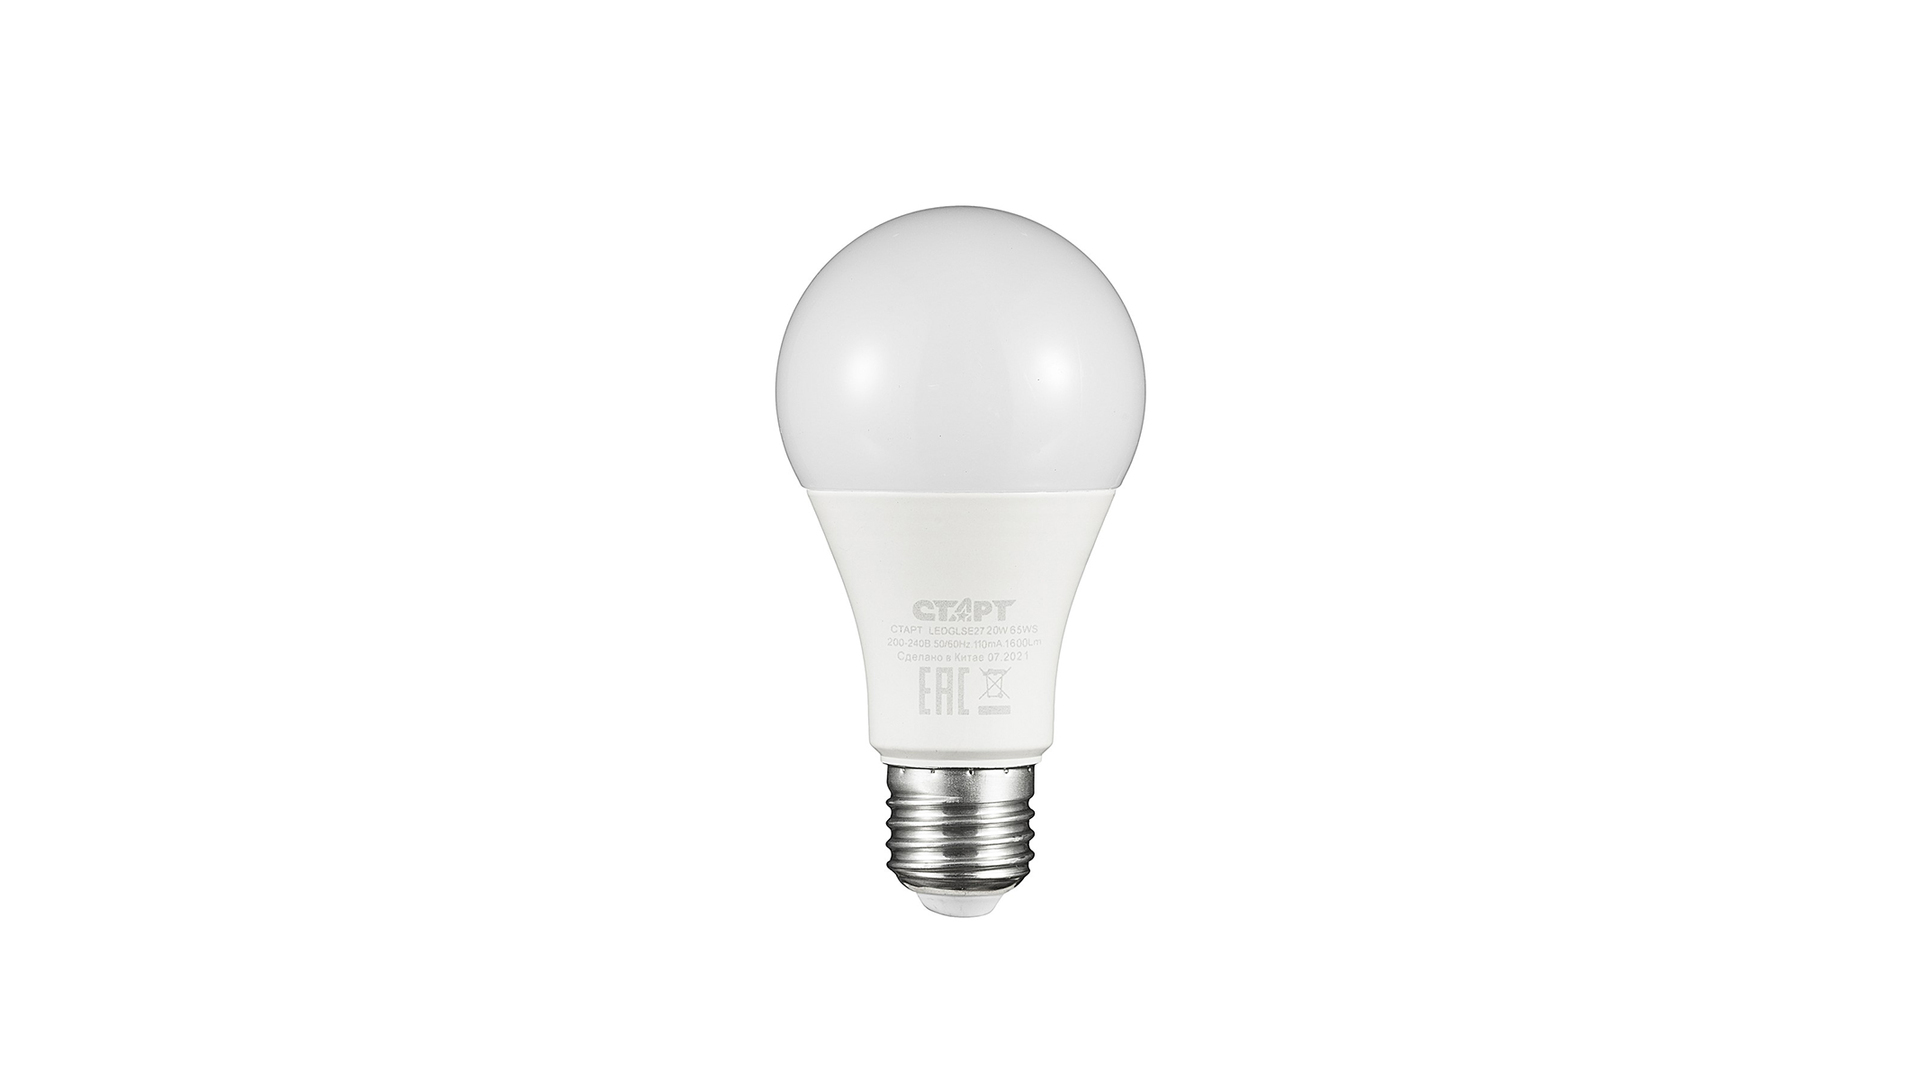 Лампа светодиодная E27 грушевидная, 20 Вт, 6500 K / холодный свет, 220 В, СТАРТ LEDGLSE27 20W 65 WS (17283)